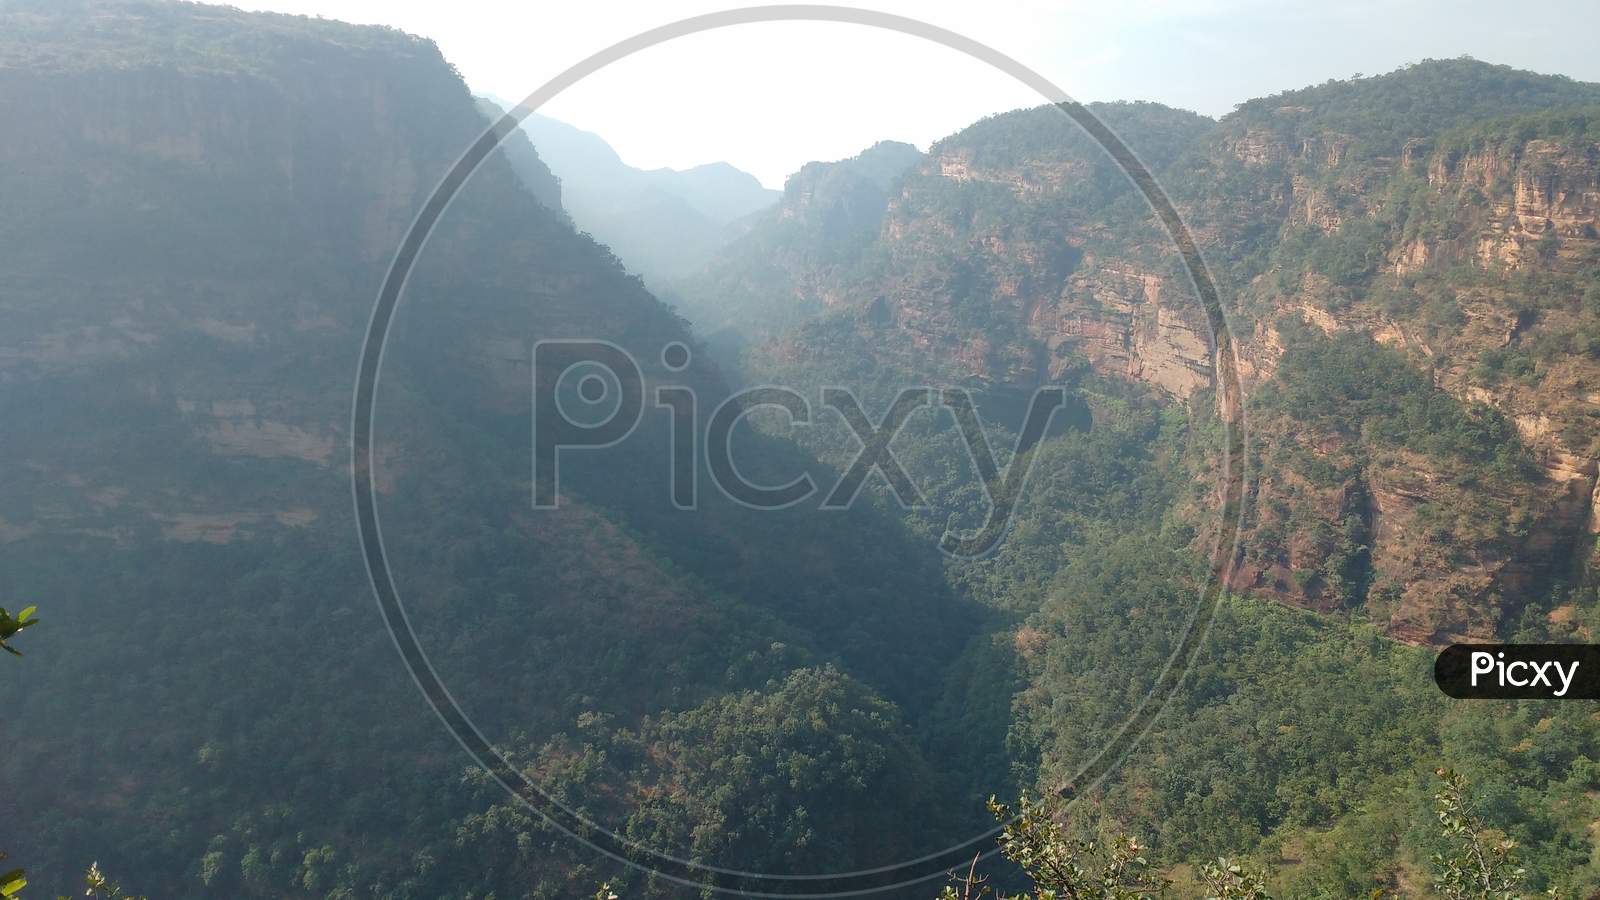 Satpura Mountain  Range, Pachmari, Madhya Pradesh